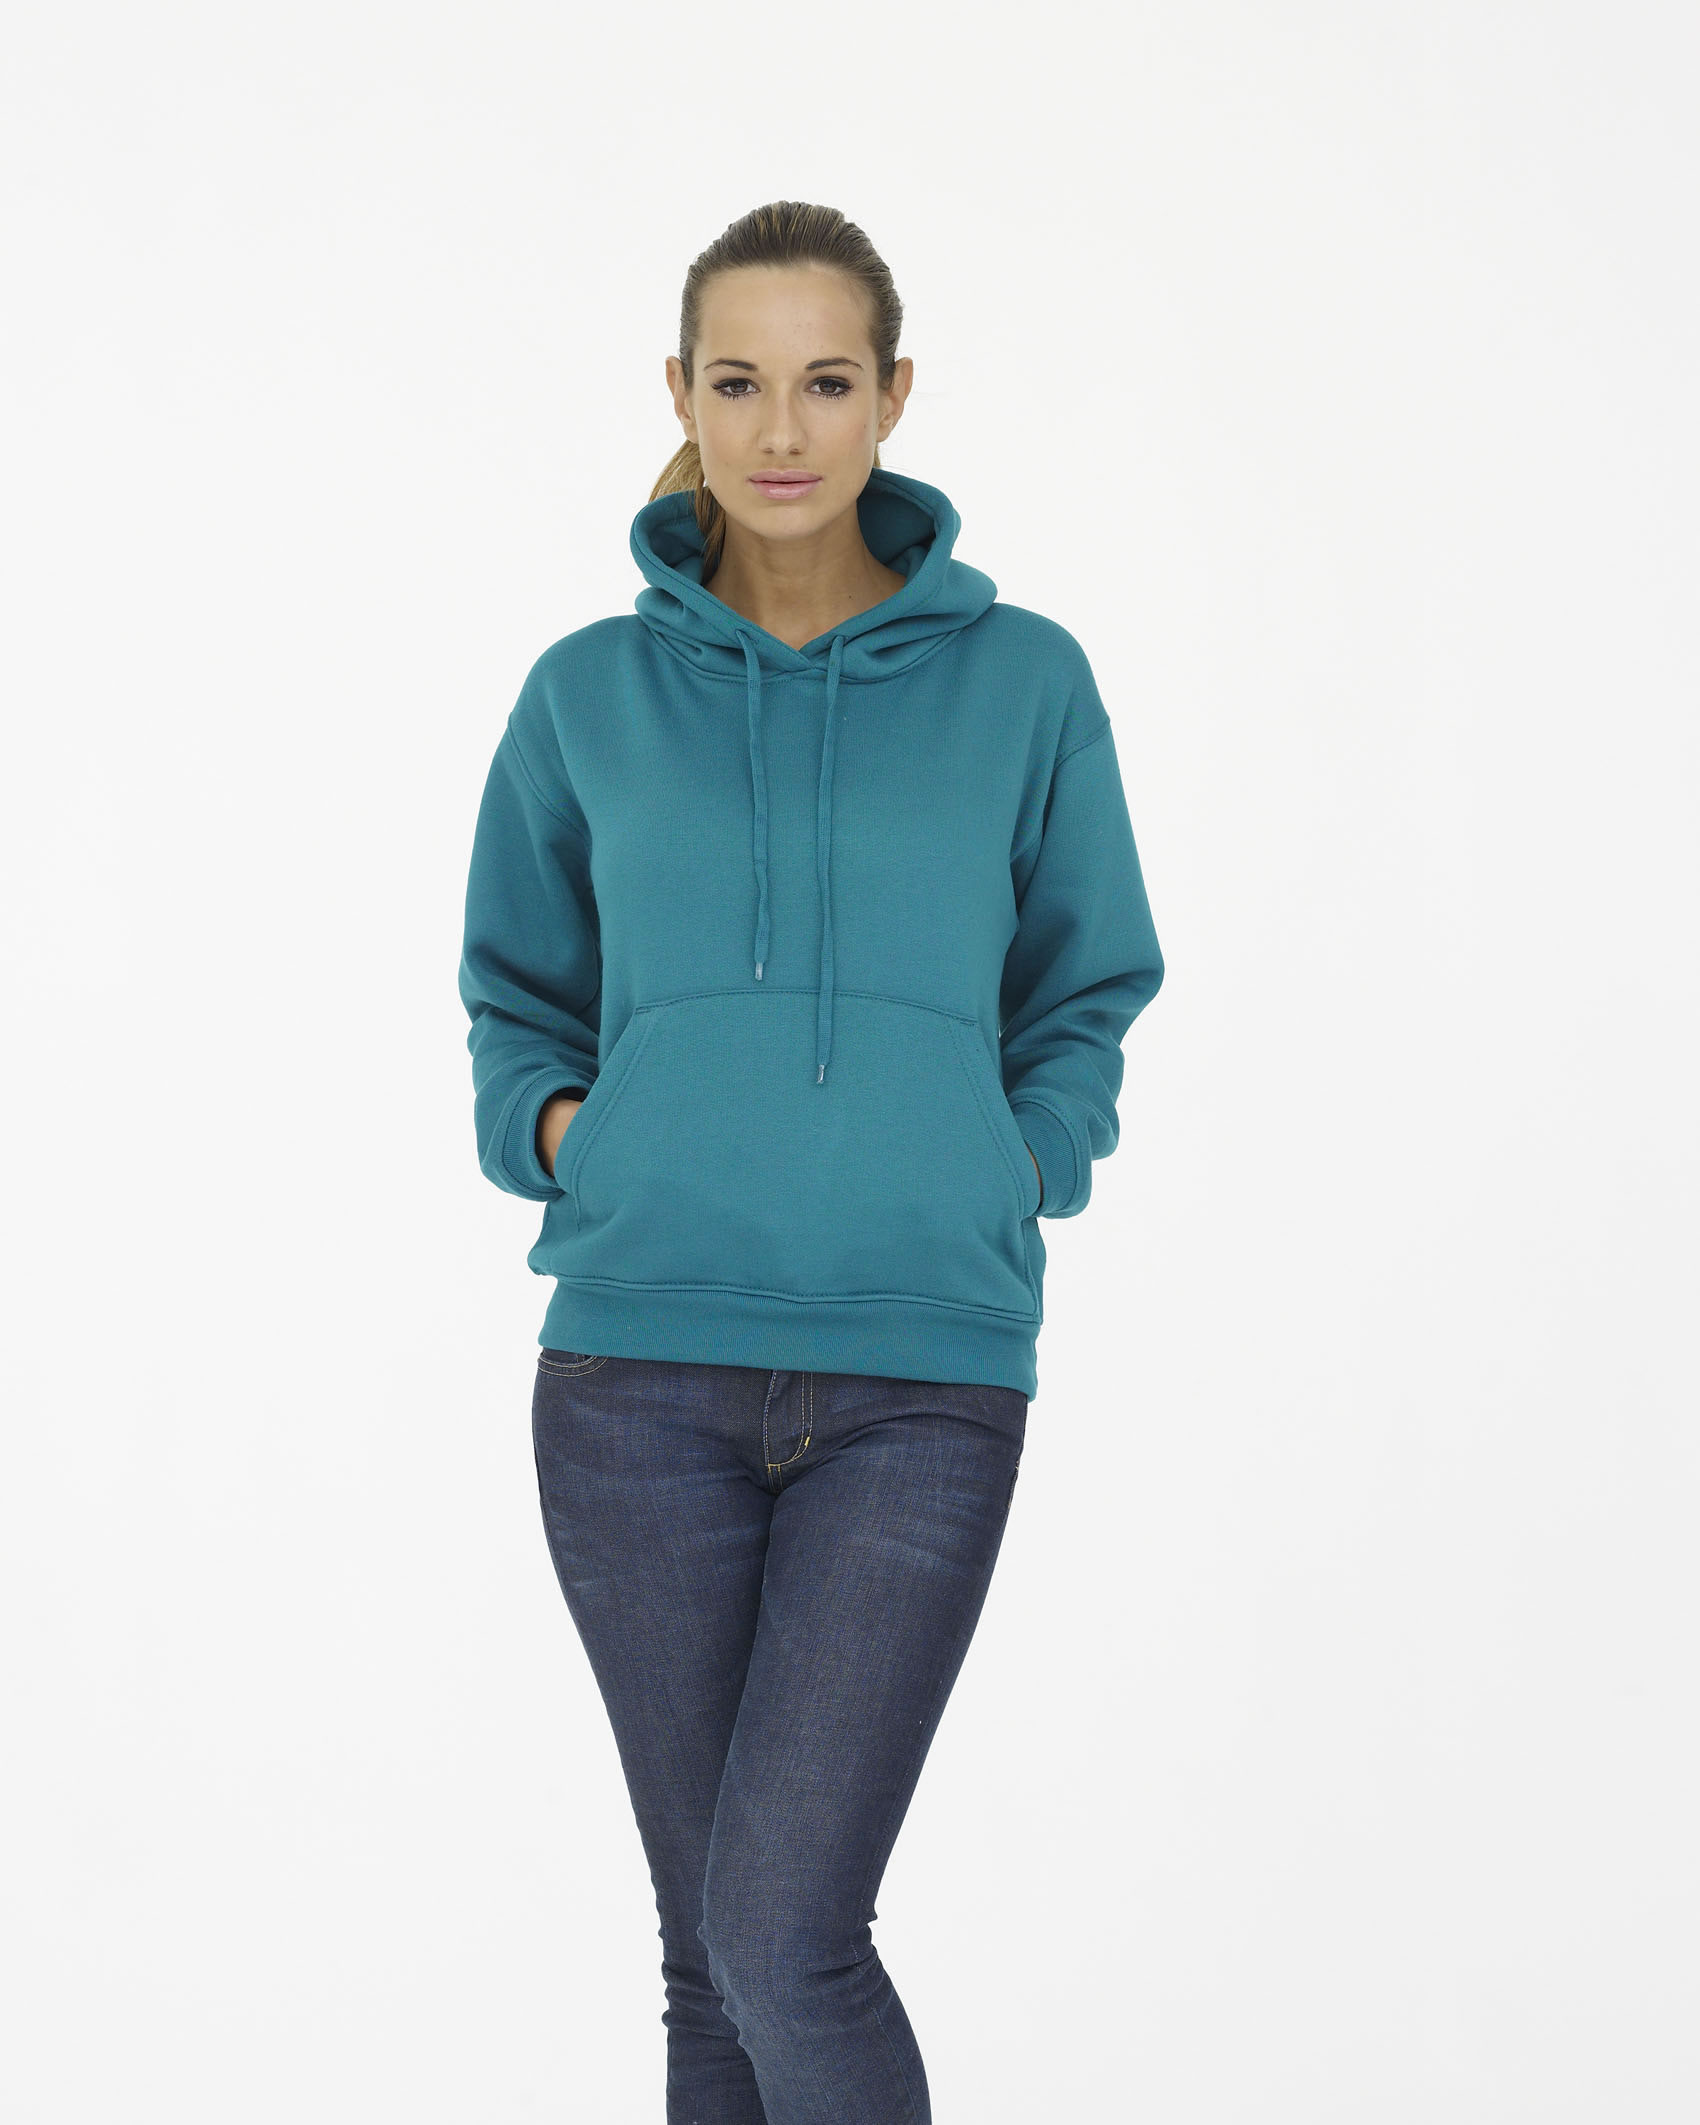 CGC Hooded Sweatshirt – Salix Embroidery